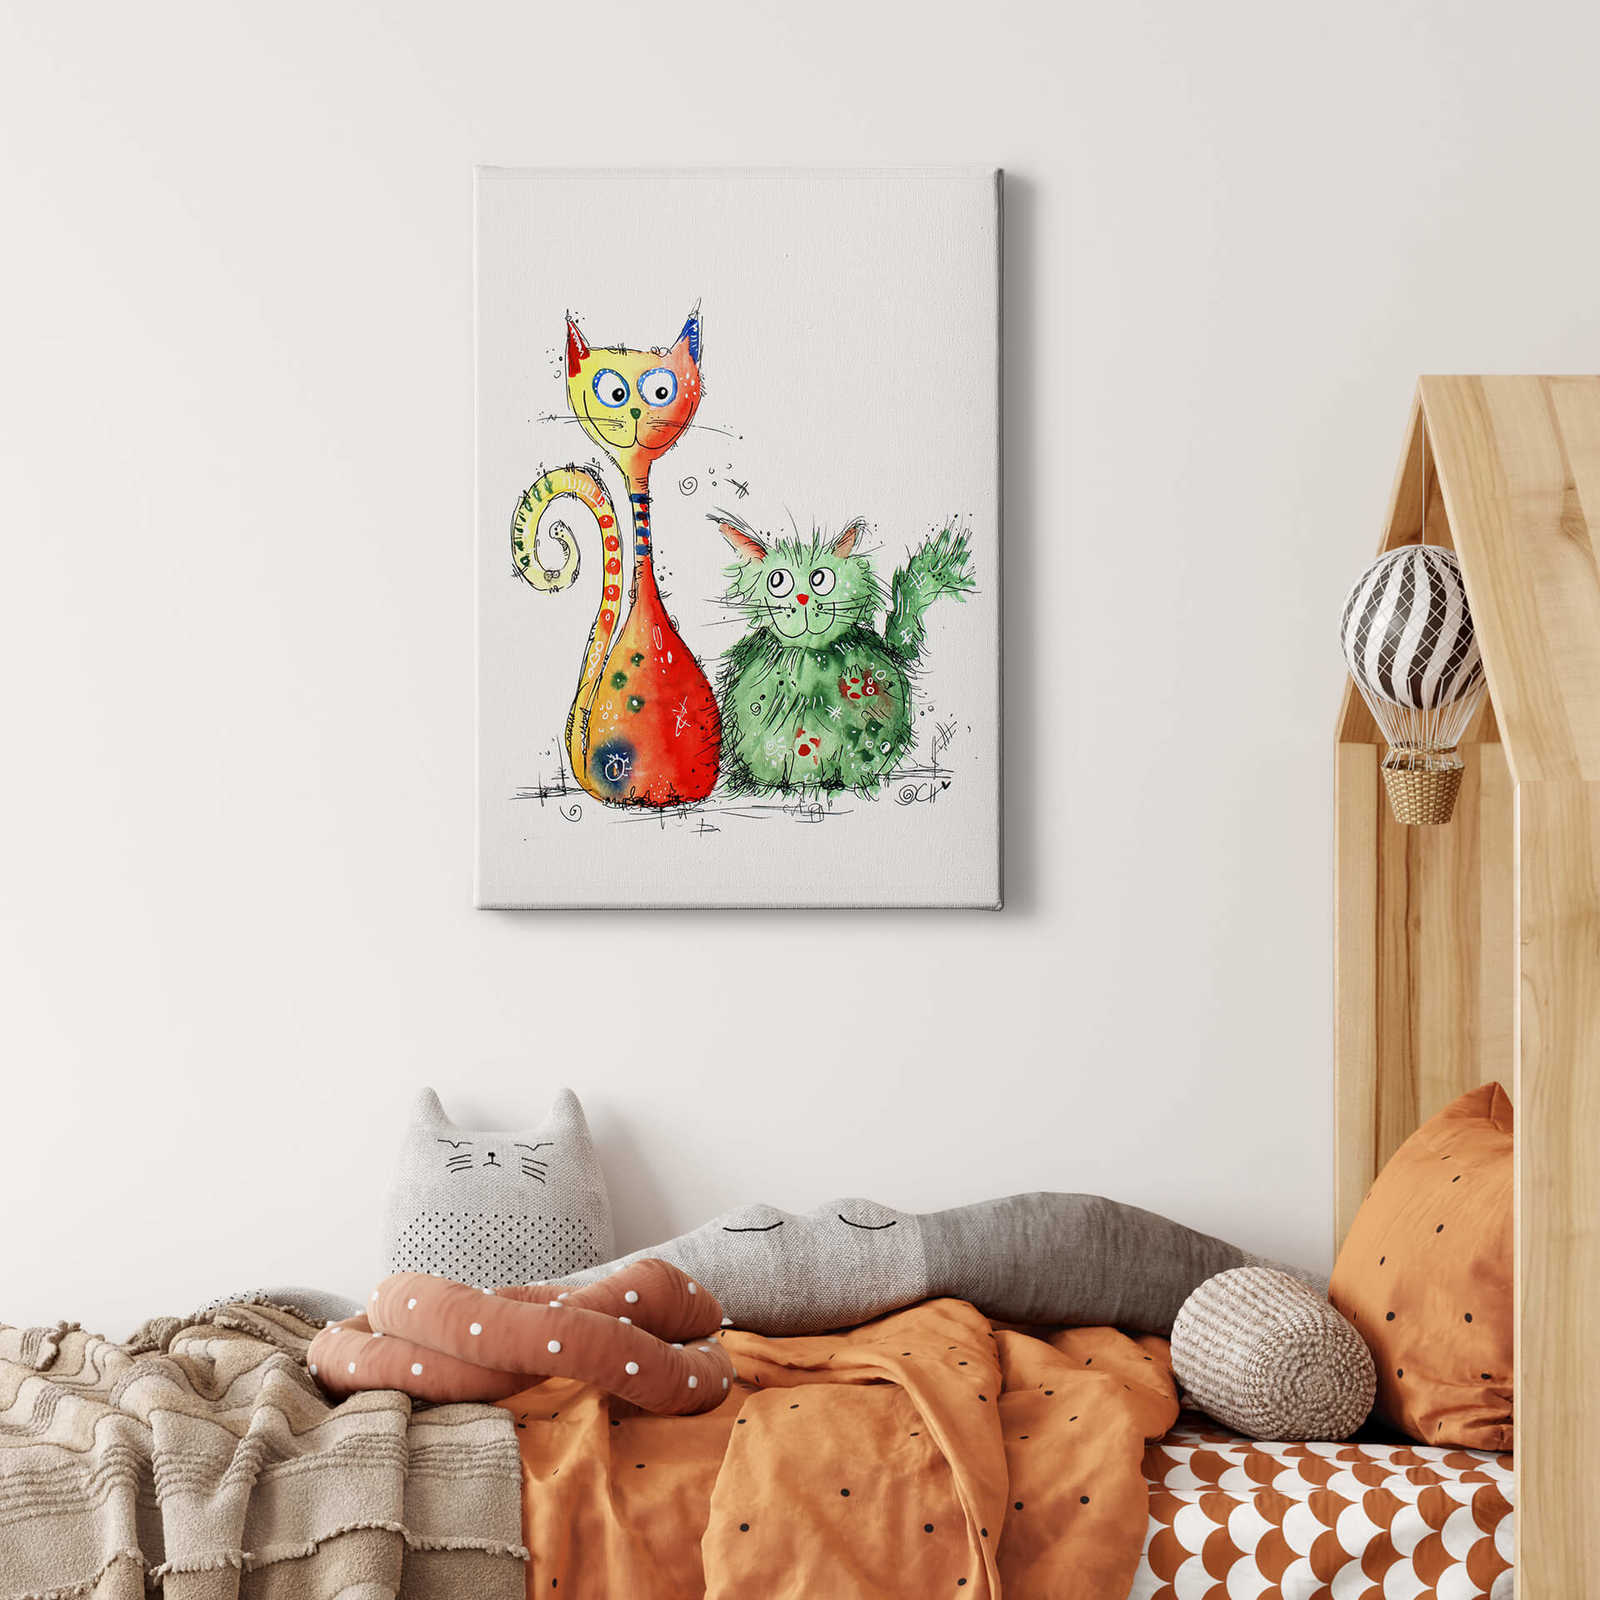             Quadro su tela Hagenmeyer: migliori amici, gatti colorati - 0,50 m x 0,70 m
        